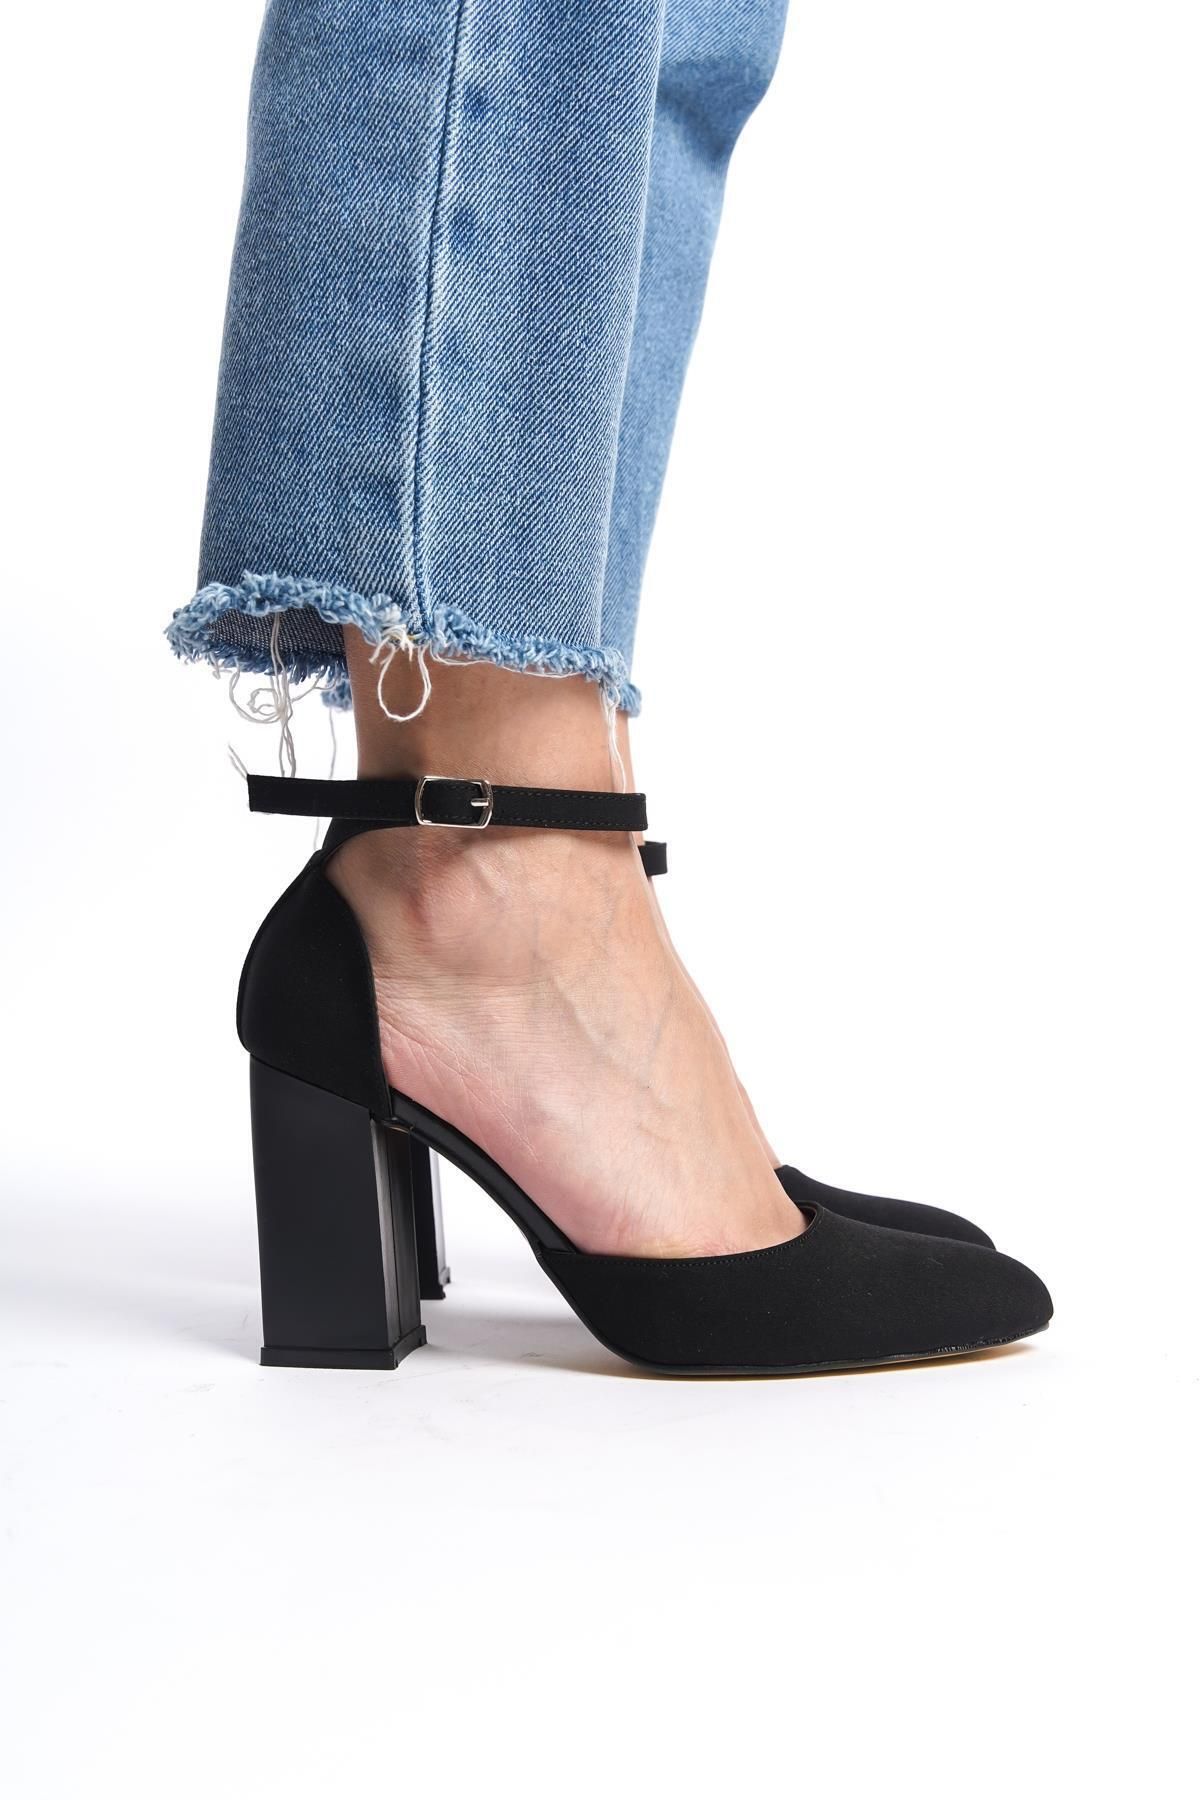 Gökhan Talay Kadın Stiletto Yuvarlak Burun Kalın Topuklu Ayakkabı Siyah Süet Mat Hope